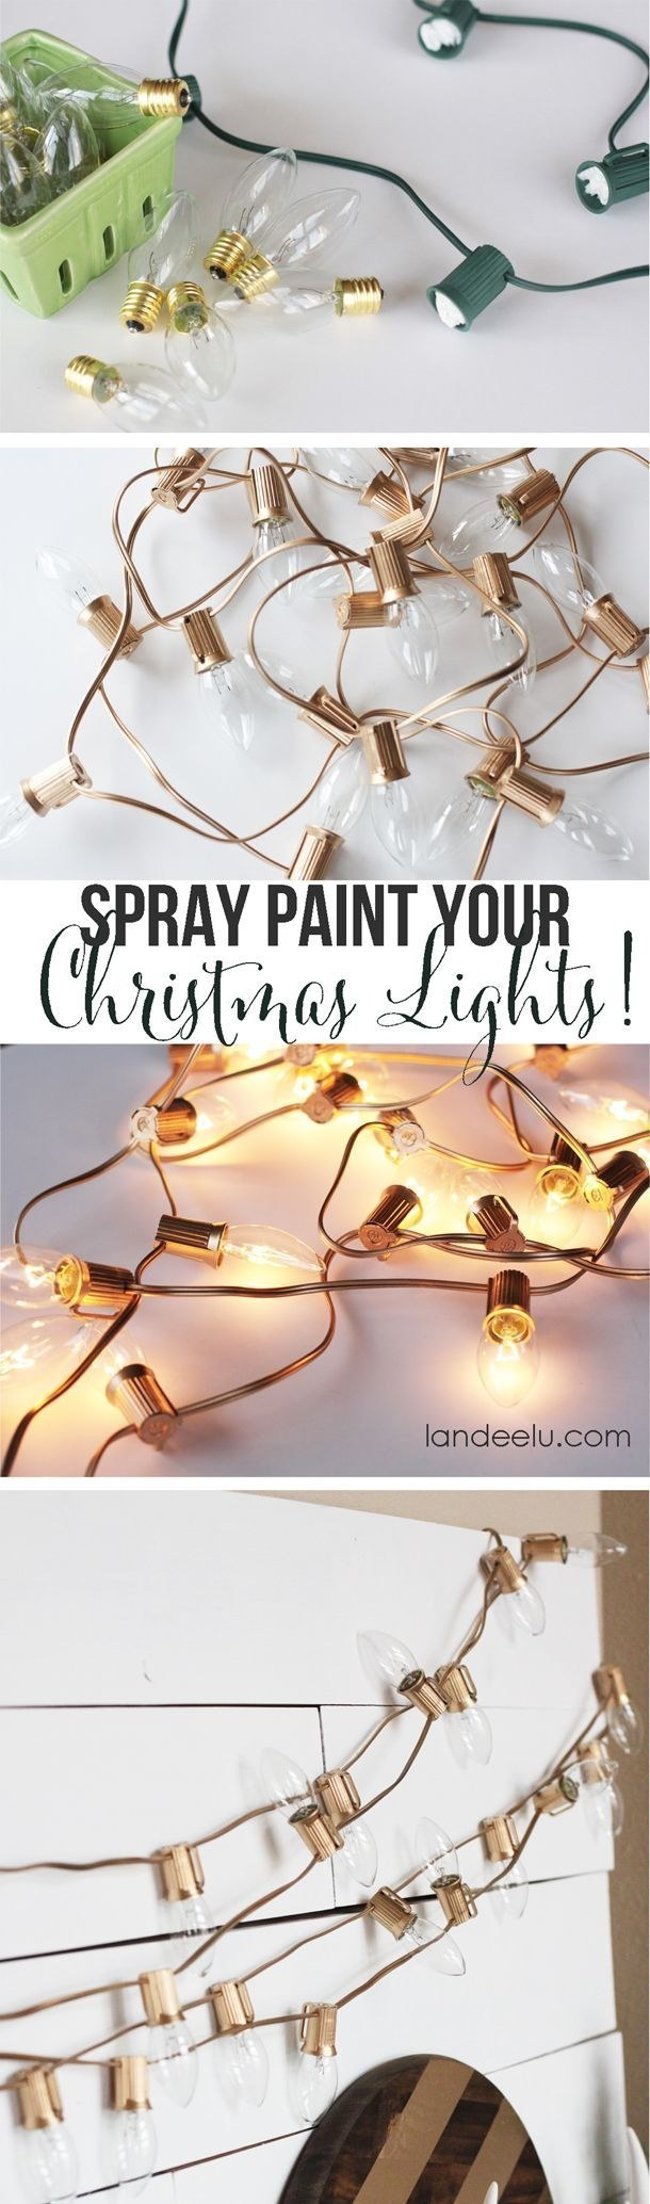 
                        19 ý tưởng trang trí đèn ấm cúng và sáng tạo ngay tại nhà vào lễ Giáng sinh
                     17